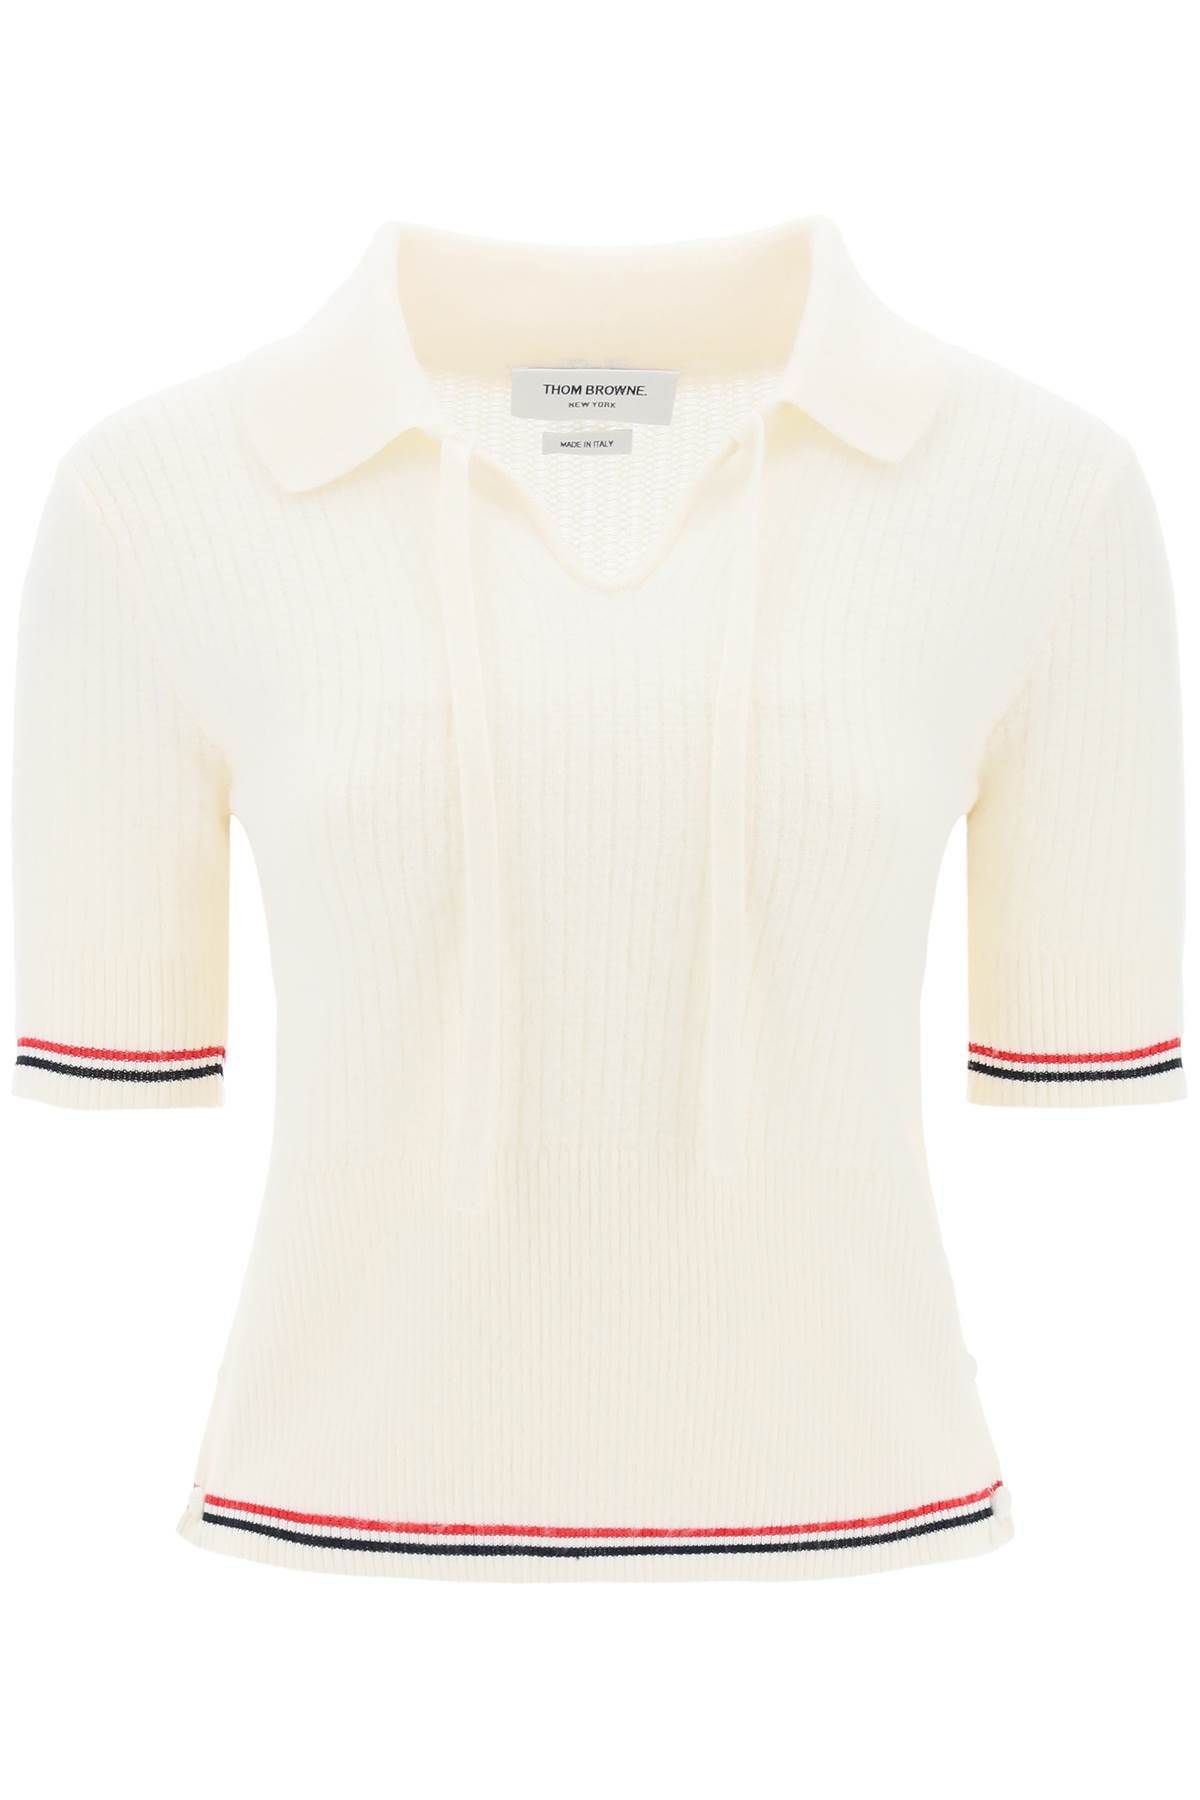 Thom Browne THOM BROWNE wool polo shirt with rwb stripe